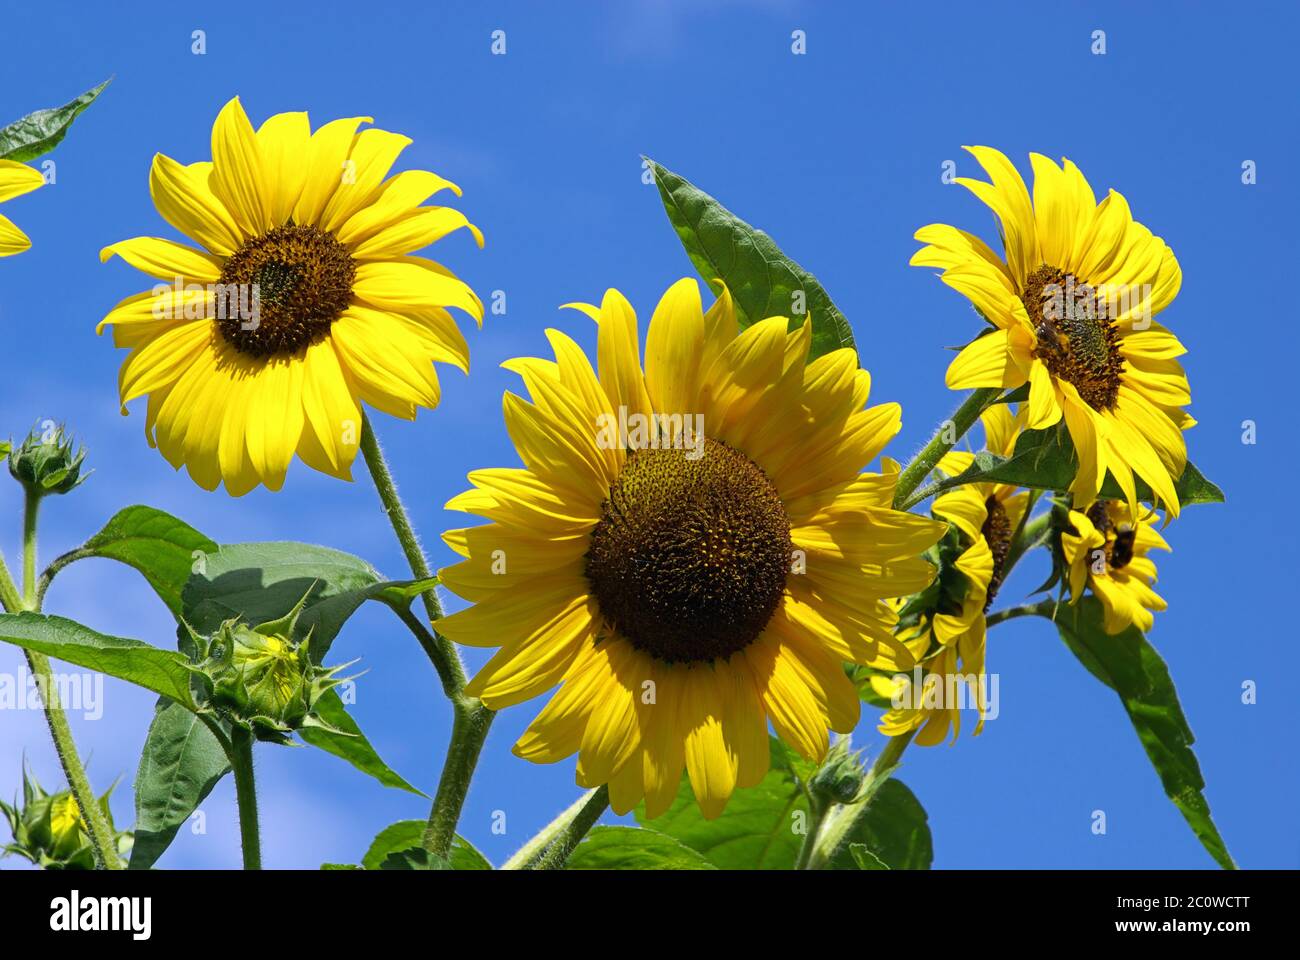 sunflowers - sunflowers 27 Stock Photo